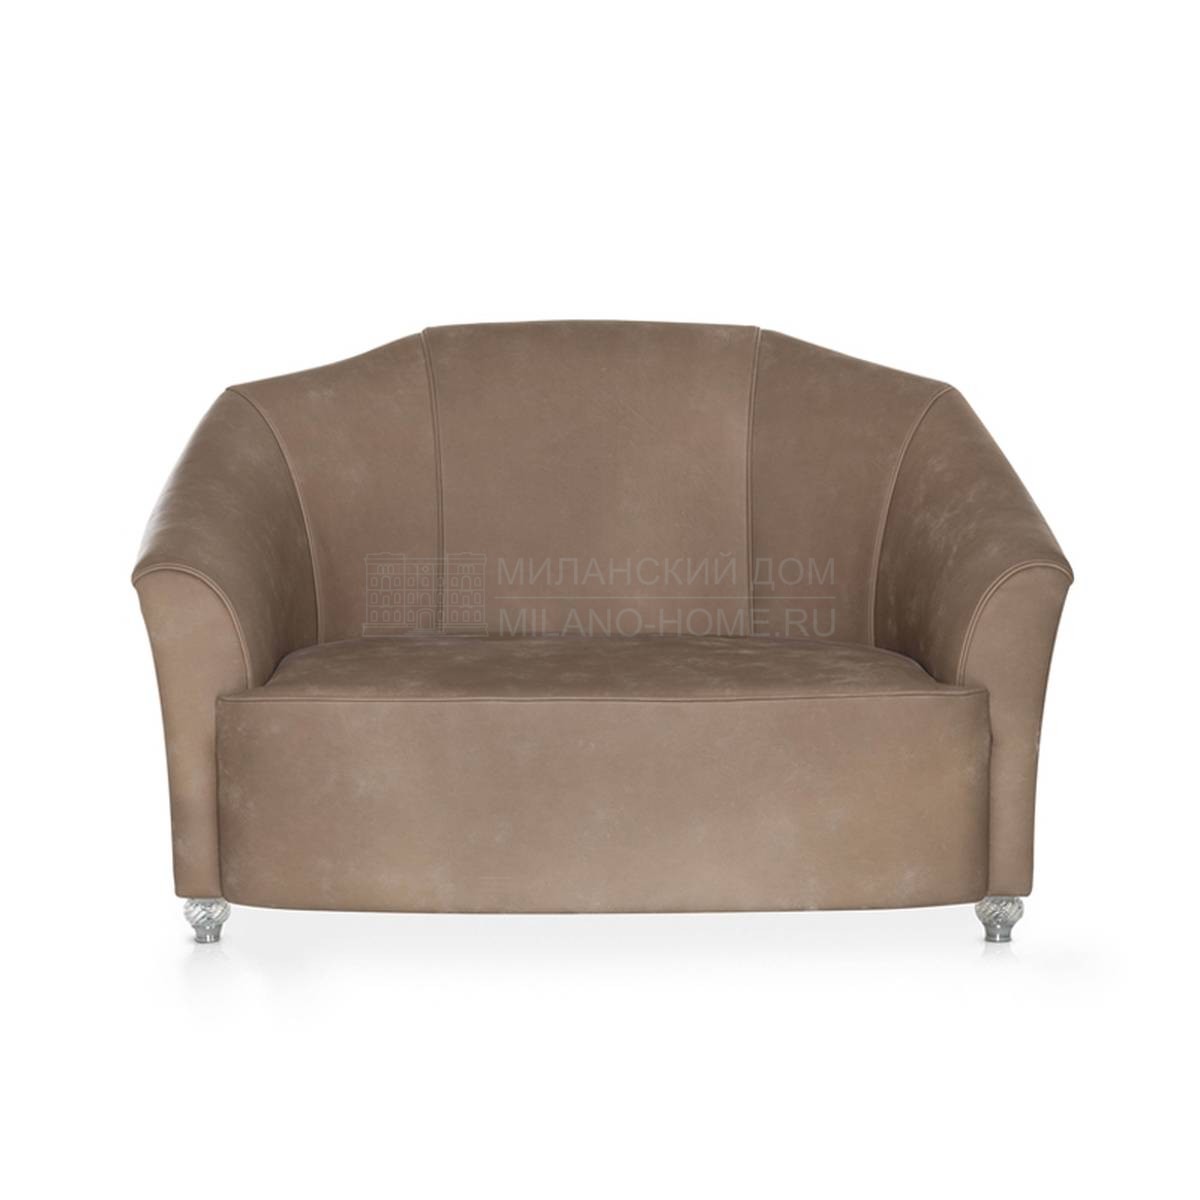 Прямой диван I50/sofa из Италии фабрики ARTE VENEZIANA